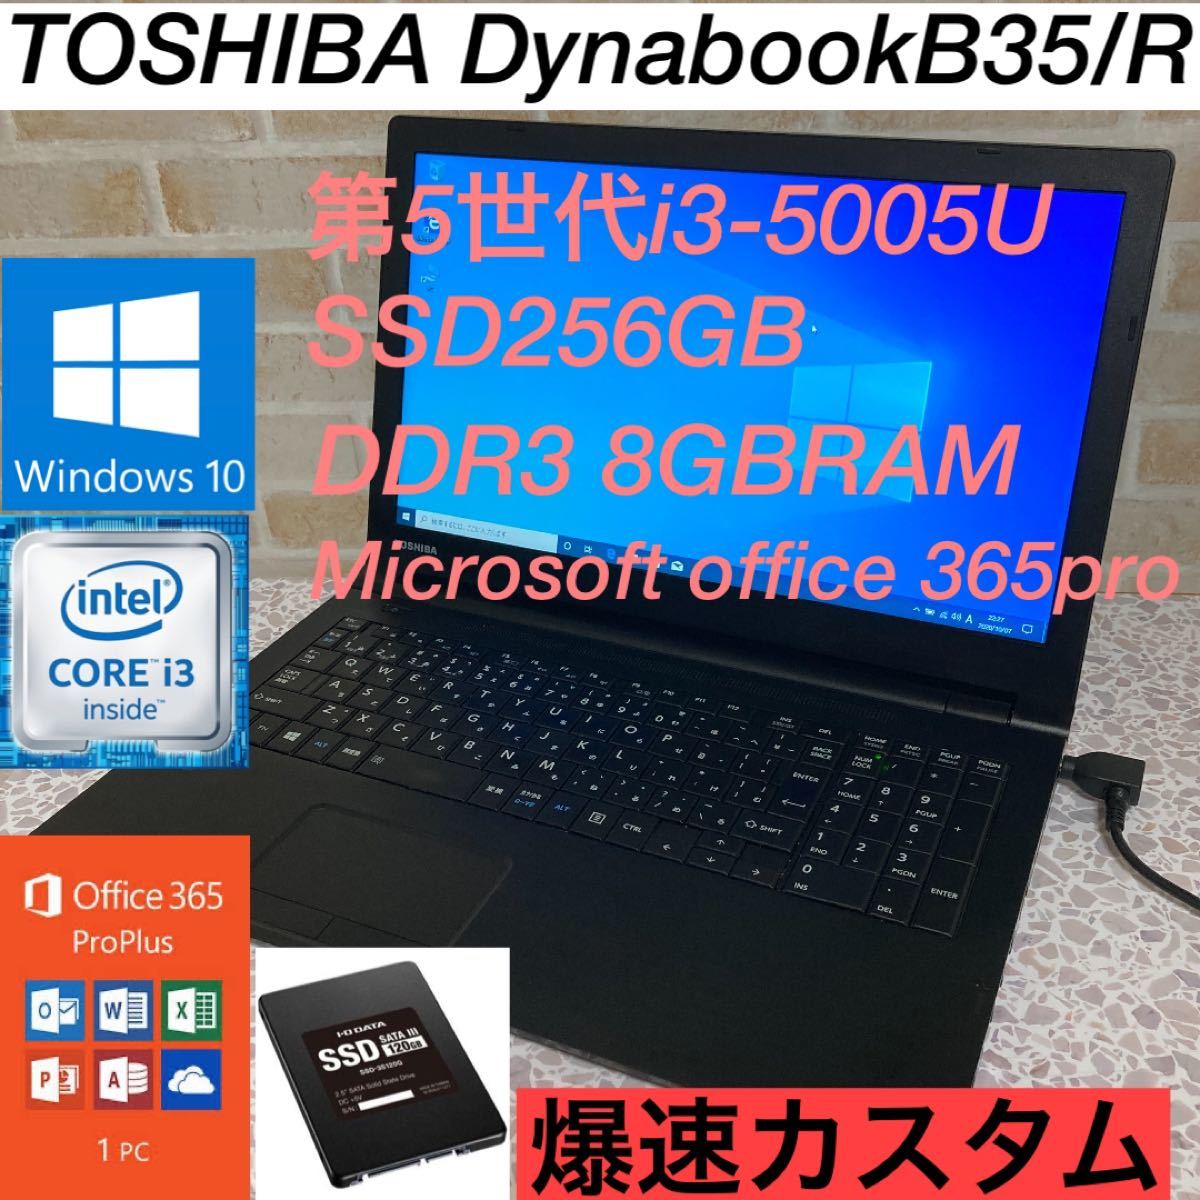 誠実 東芝DynabookB35/R第5世代SSD256G爆速カスタム仕様オフィス付き ノートPC